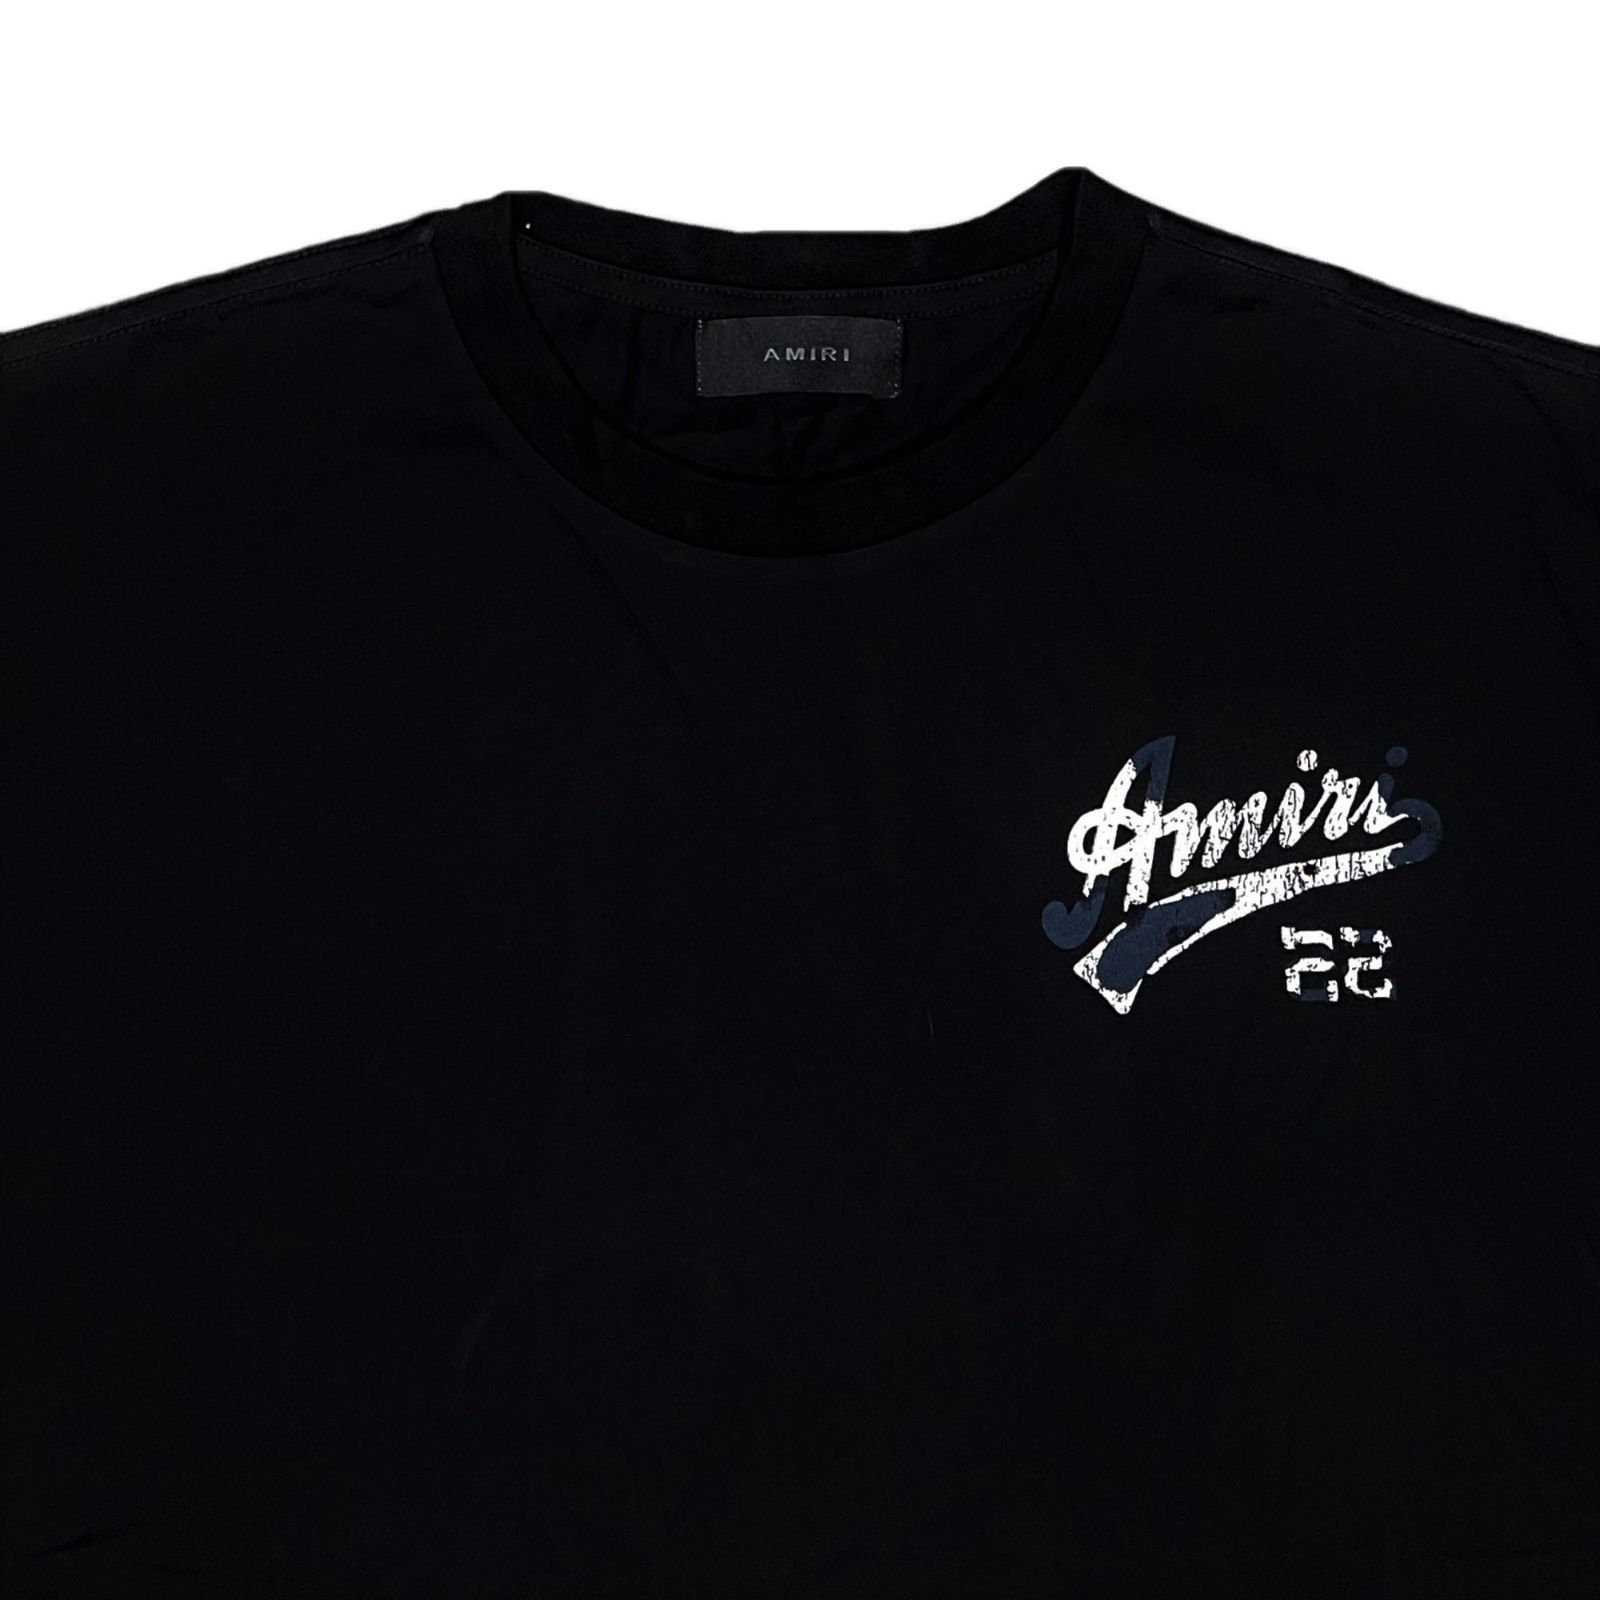 AMIRI アミリ 22 JERSEY Tシャツ ブラック S55cm袖丈